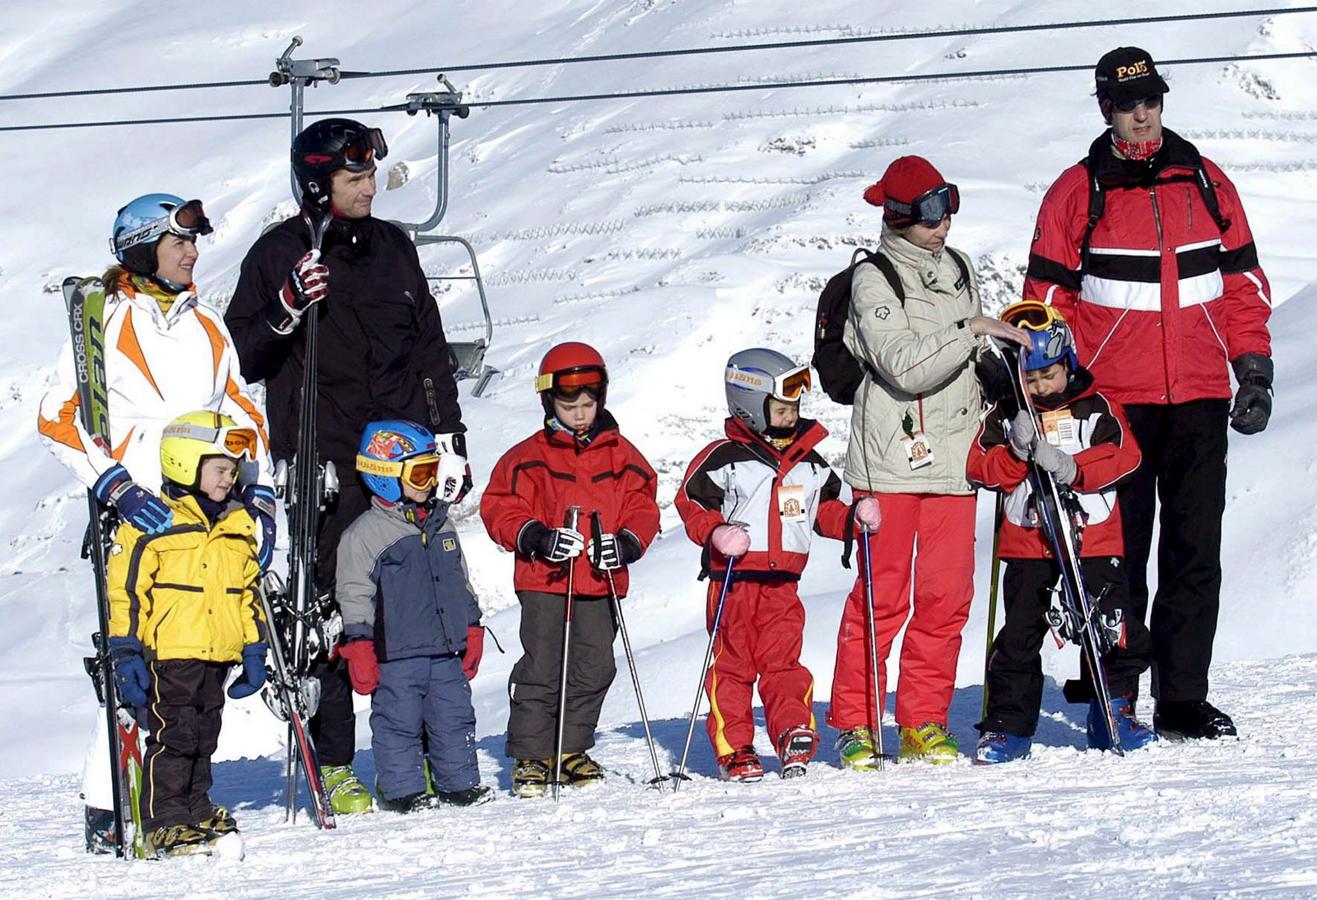 En invierno solían ir a Baqueira Beret a esquiar en familia, como hicieron estas pasadas navidades, sin saber que unos días después aparecerían las fotos de Iñaki Urdangarin de la mano de otra mujer.. 